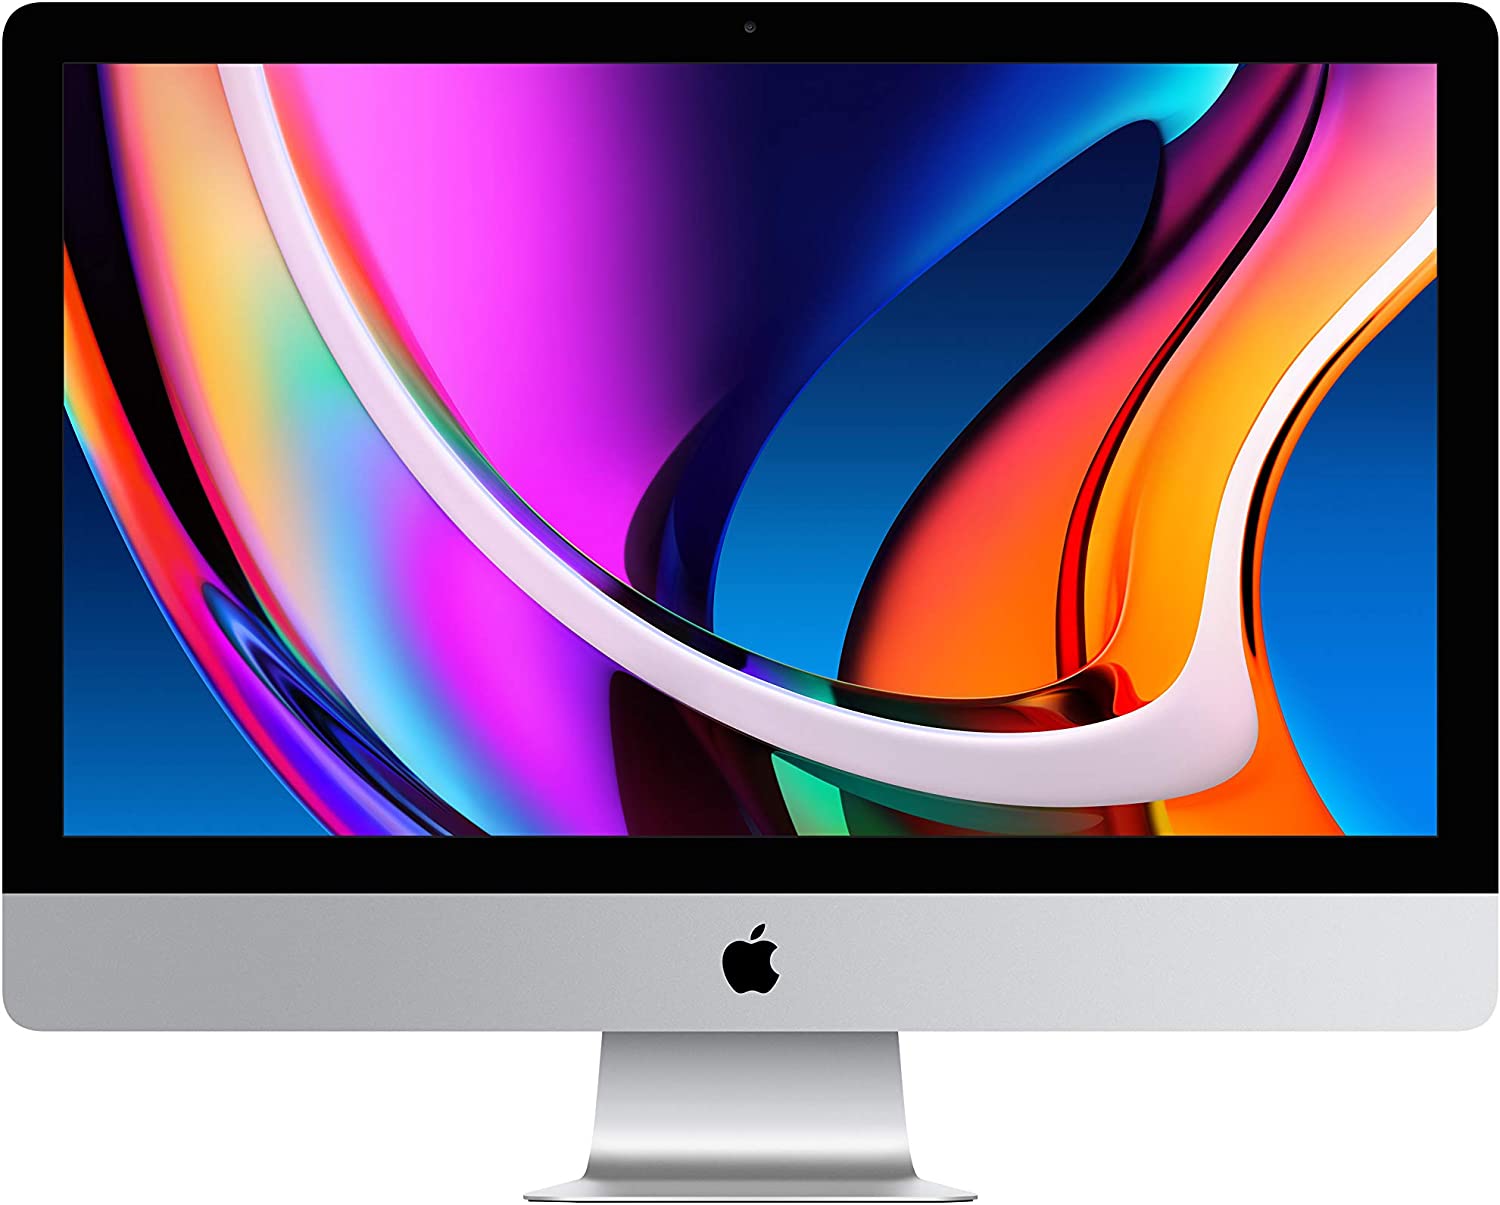 2020 Apple iMac with Retina 5K display (27-inch, 8GB RAM, 512GB SSD Storage)